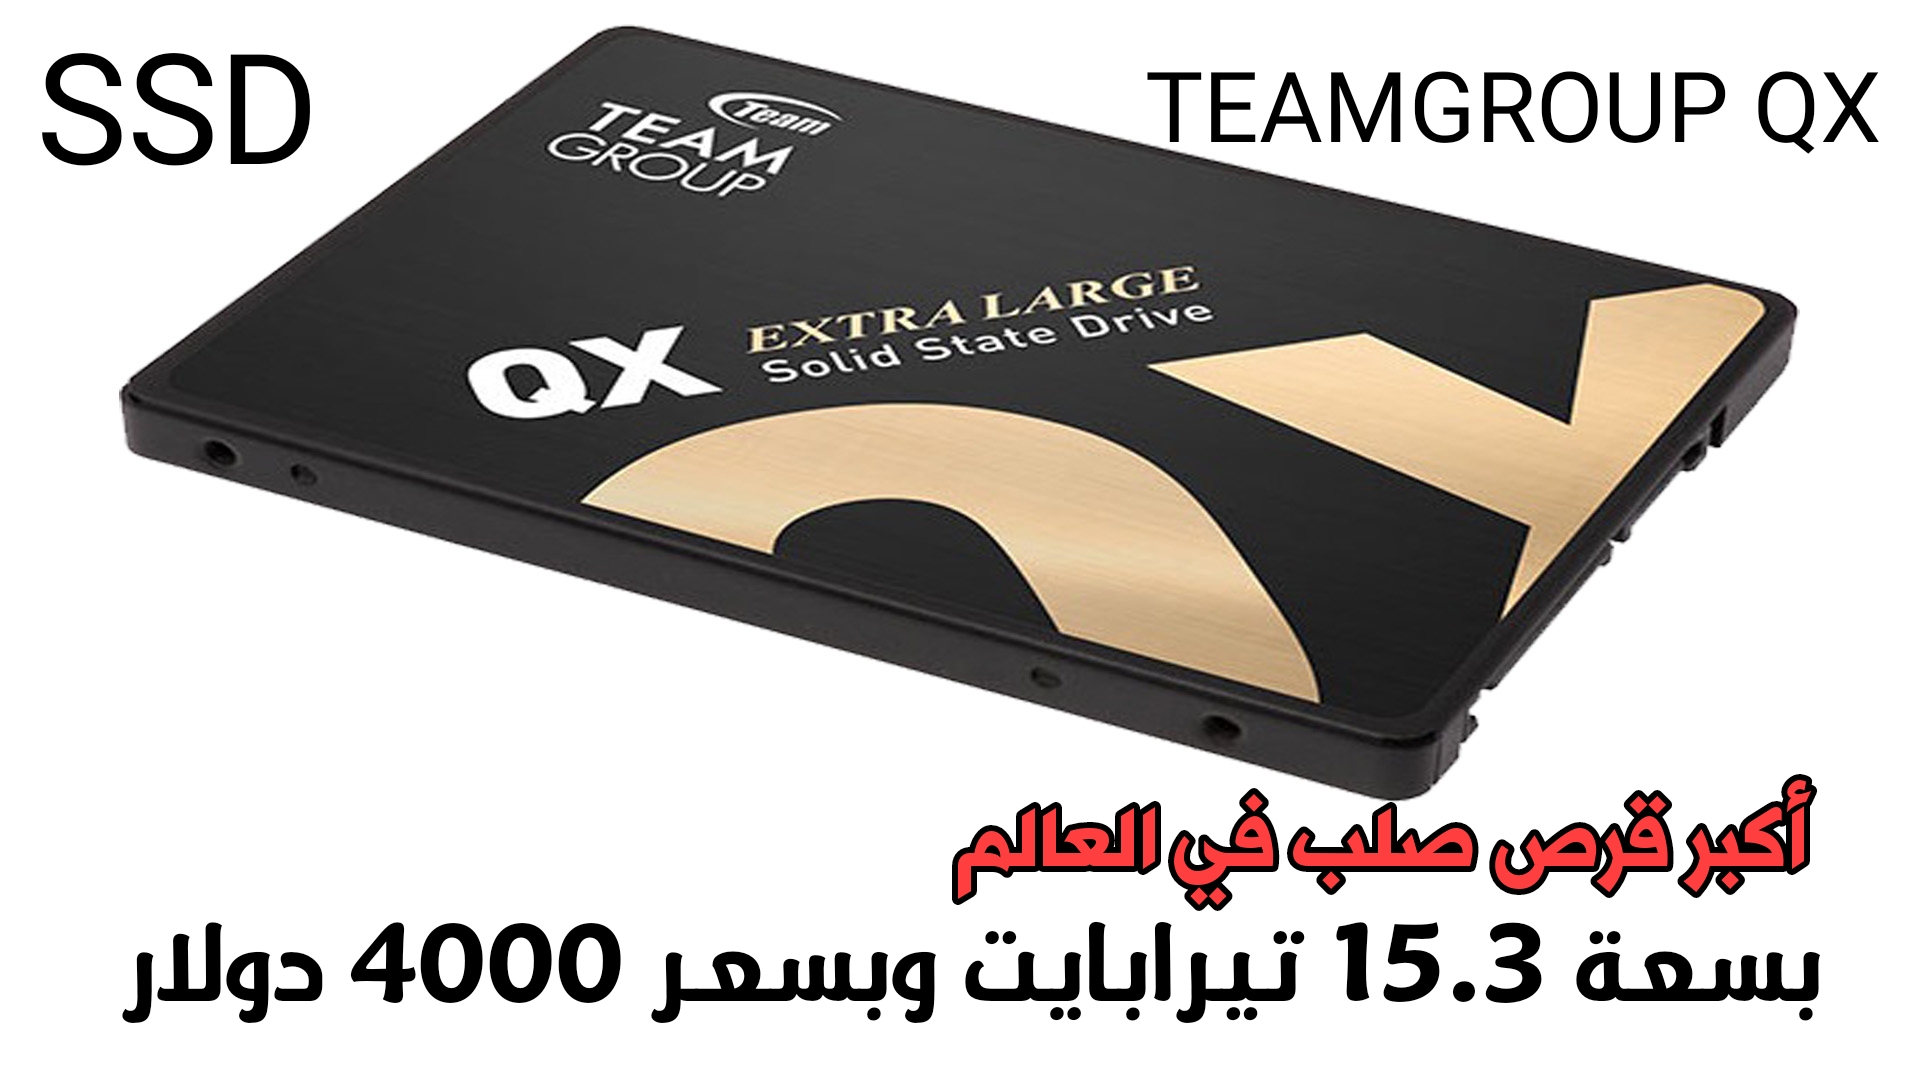 أكبر قرص صلب TEAMGROUP QX من نوع SSD  وبسعة 15.3 تيرابايت وبسعر 4000 دولار على Amazon